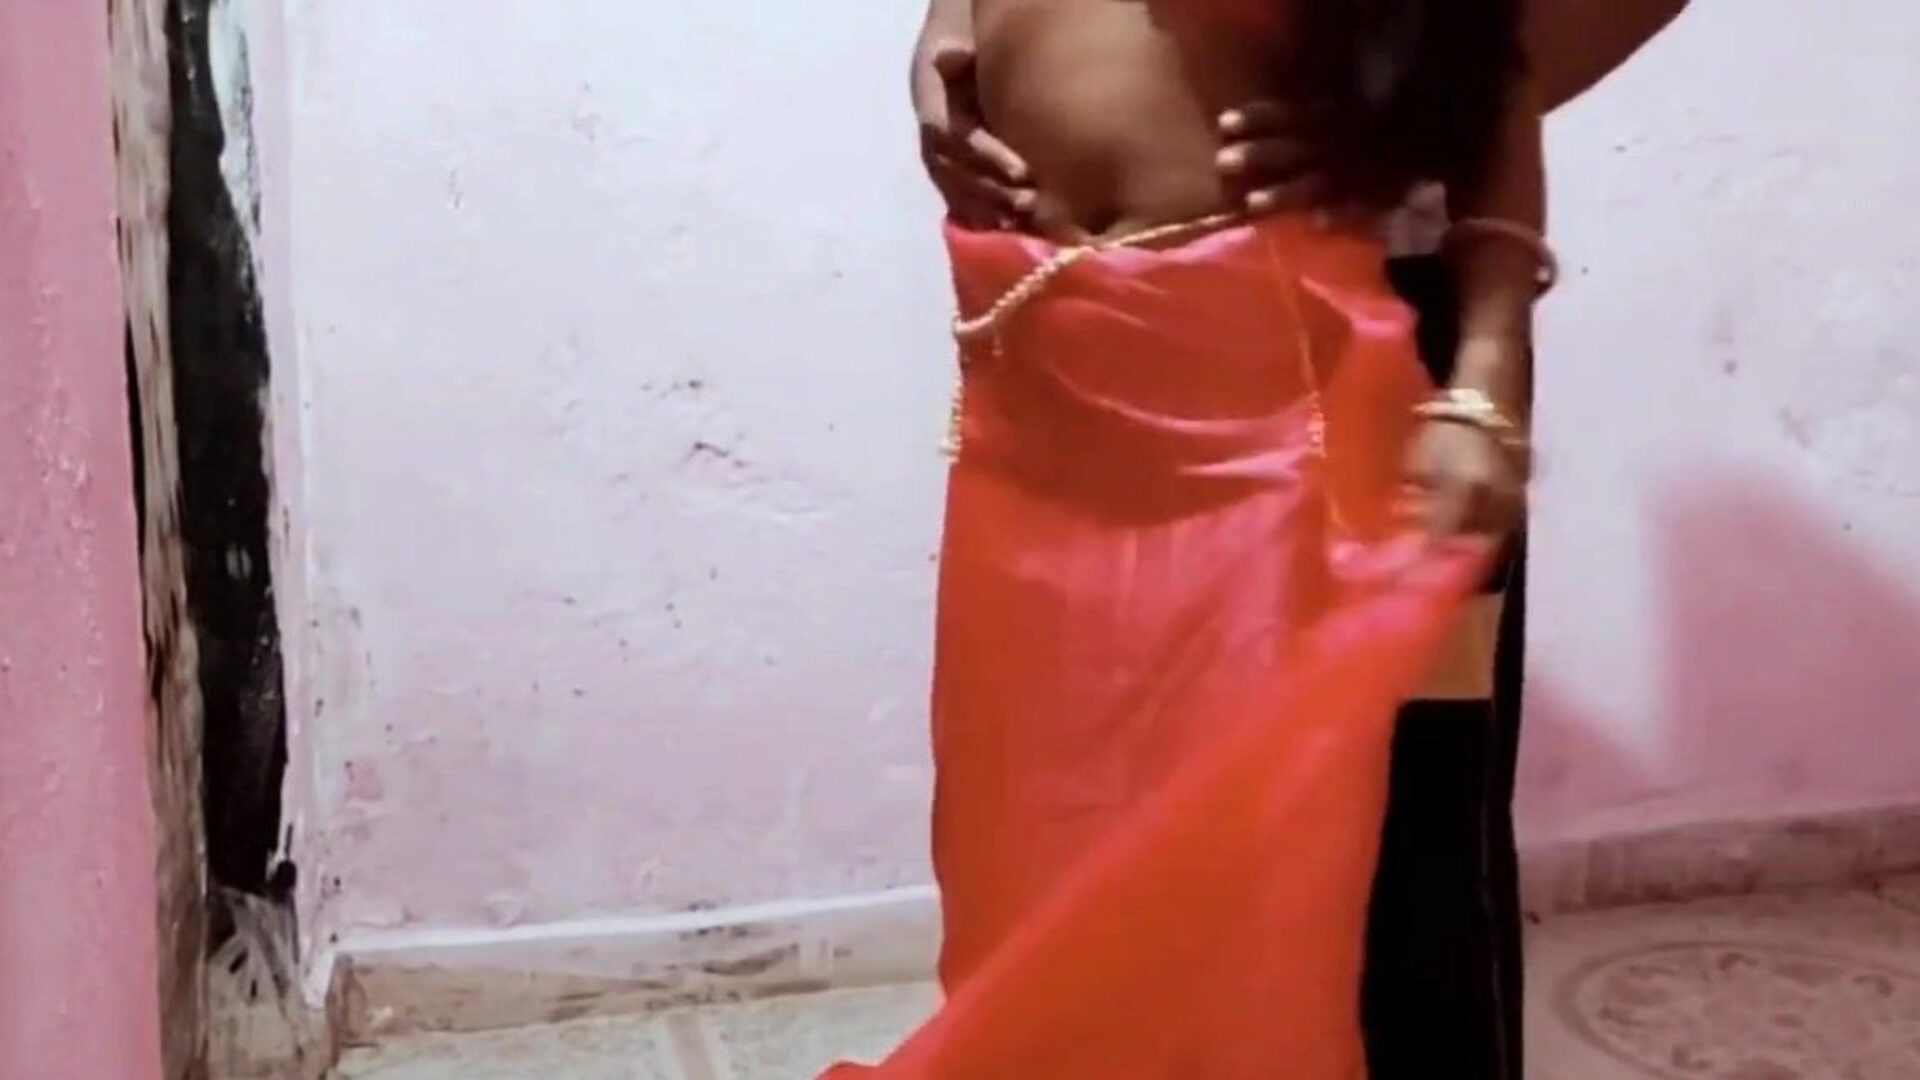 alex ne bhabhi ko choda szoba szórakozás férjjel: ingyenes pornó b9 nézni alex ne bhabhi ko choda szoba szórakozás férj film jelenettel a xhamsteren - a végső archívum a mindenki számára ingyenes sri-lankai ázsiai hd xxx pornográfia tube film jelenetekről